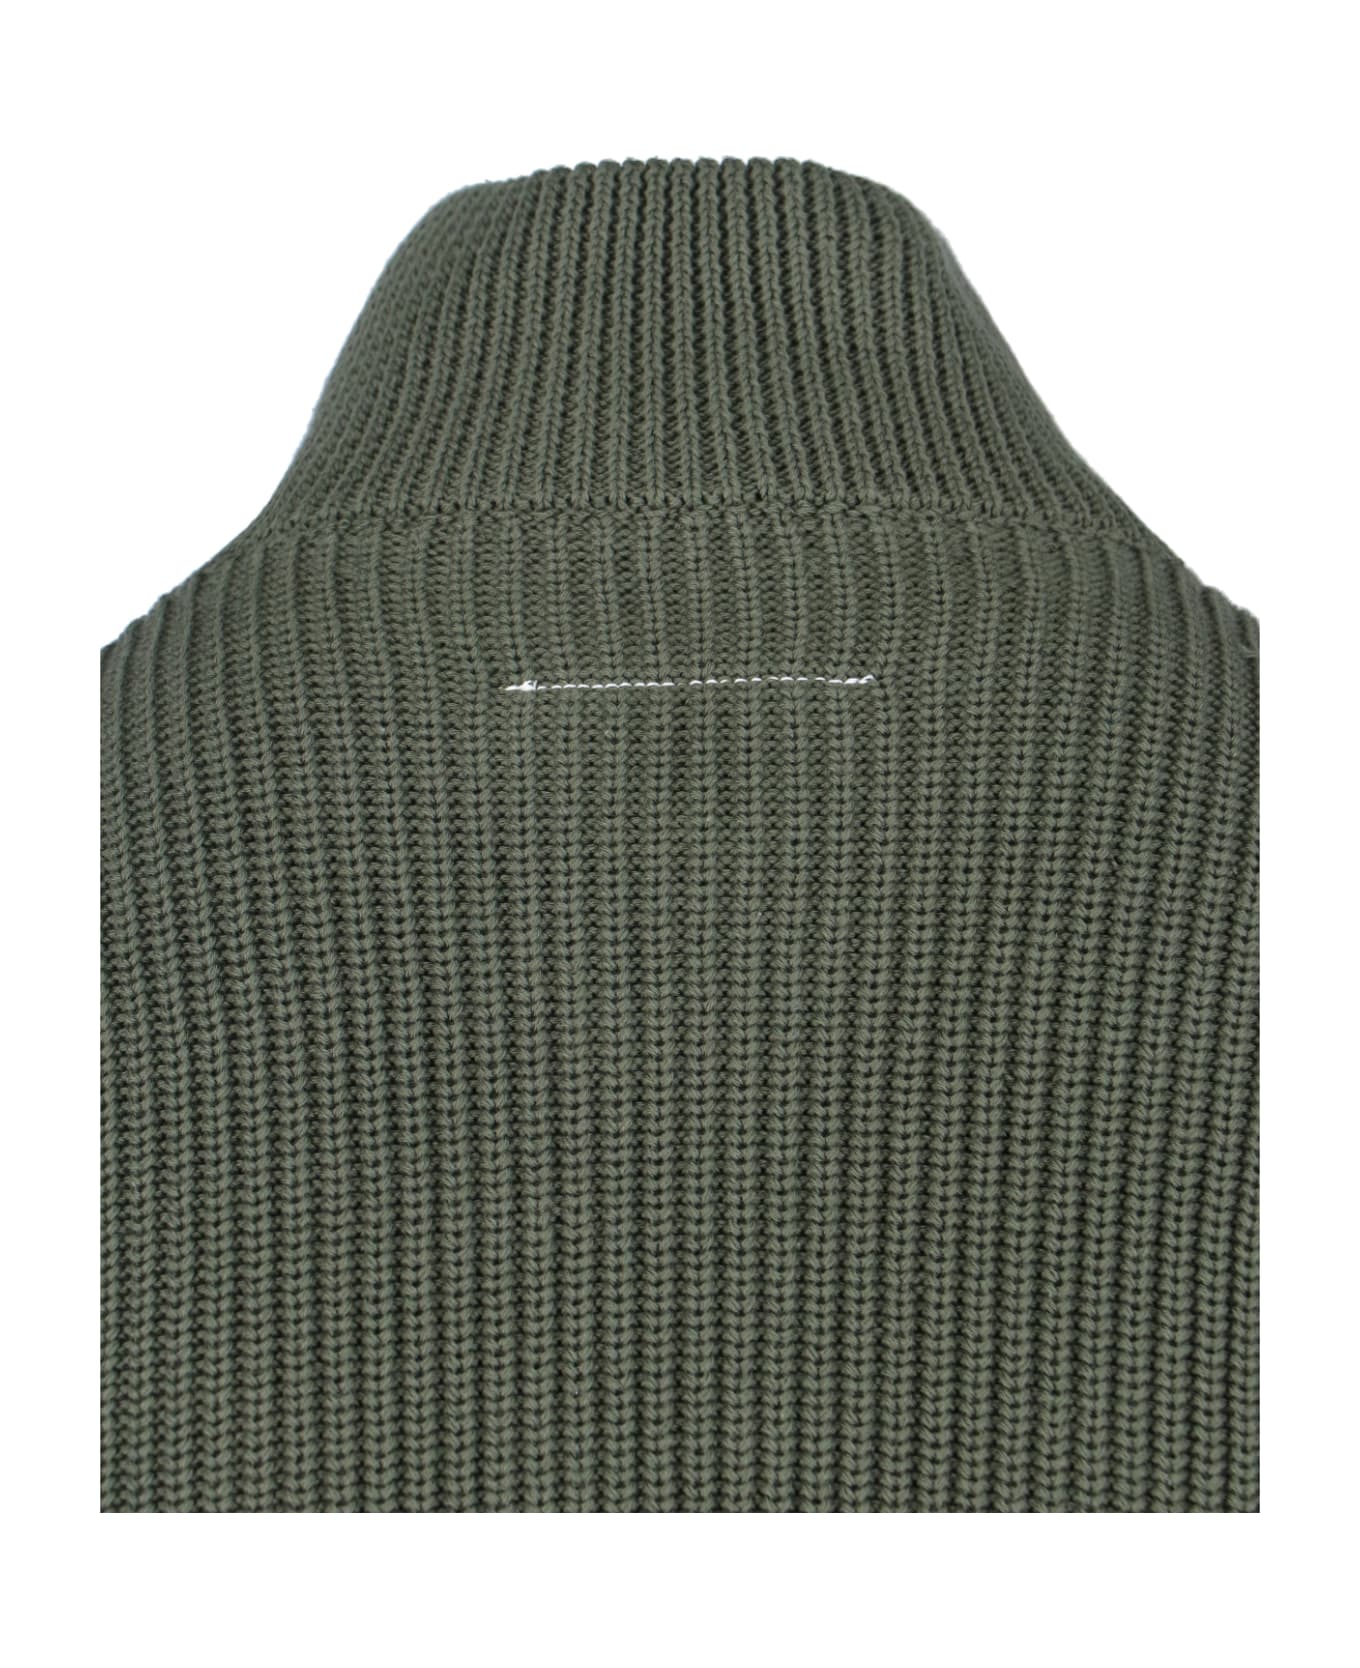 MM6 Maison Margiela Zip Sweater - Green ニットウェア